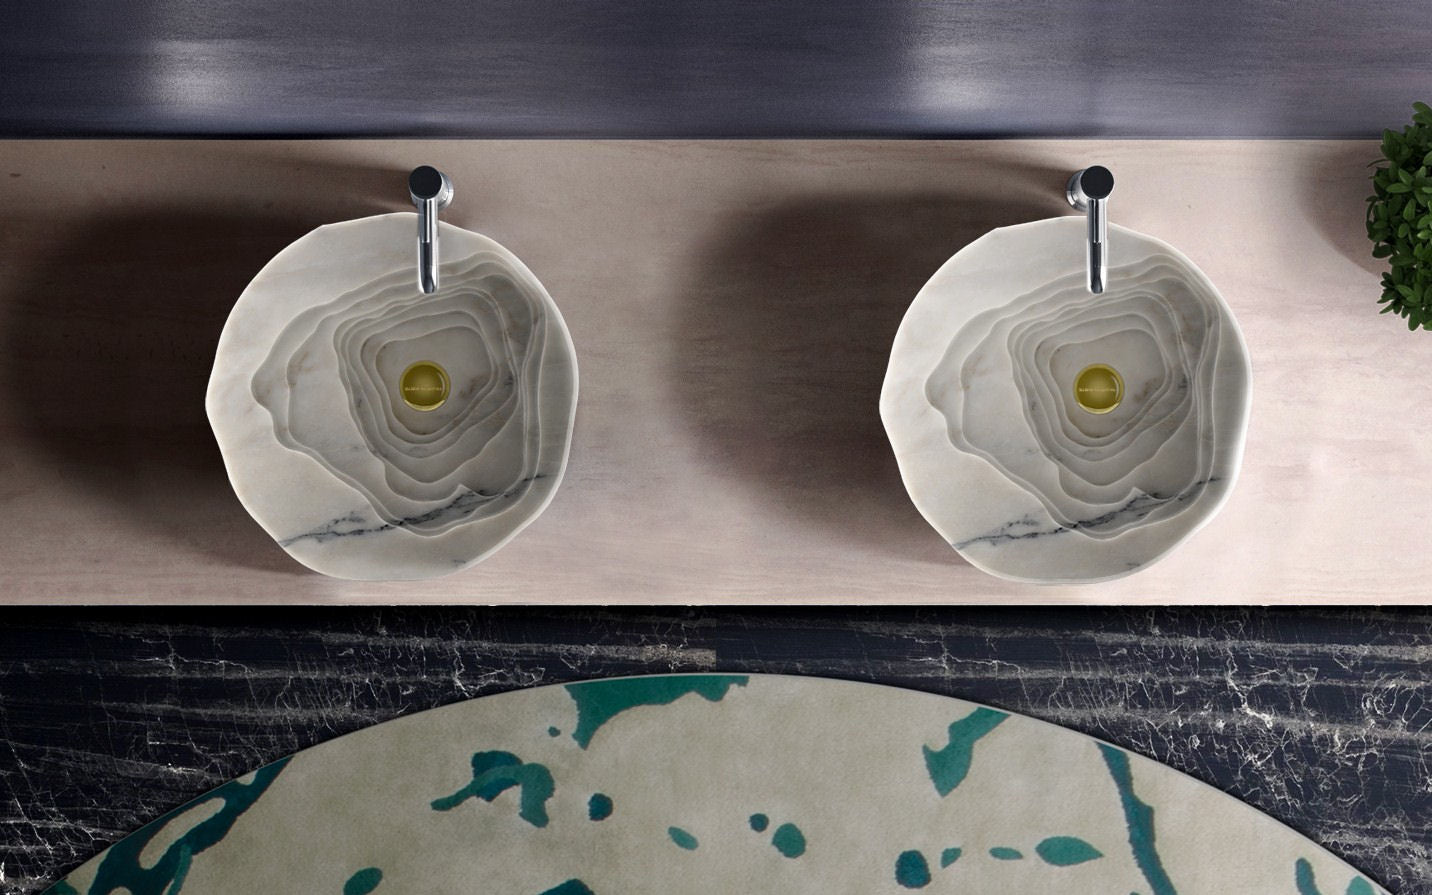 Duorum Unique Marble Vessel Sink by Maison Valentina - |VESIMI Design|